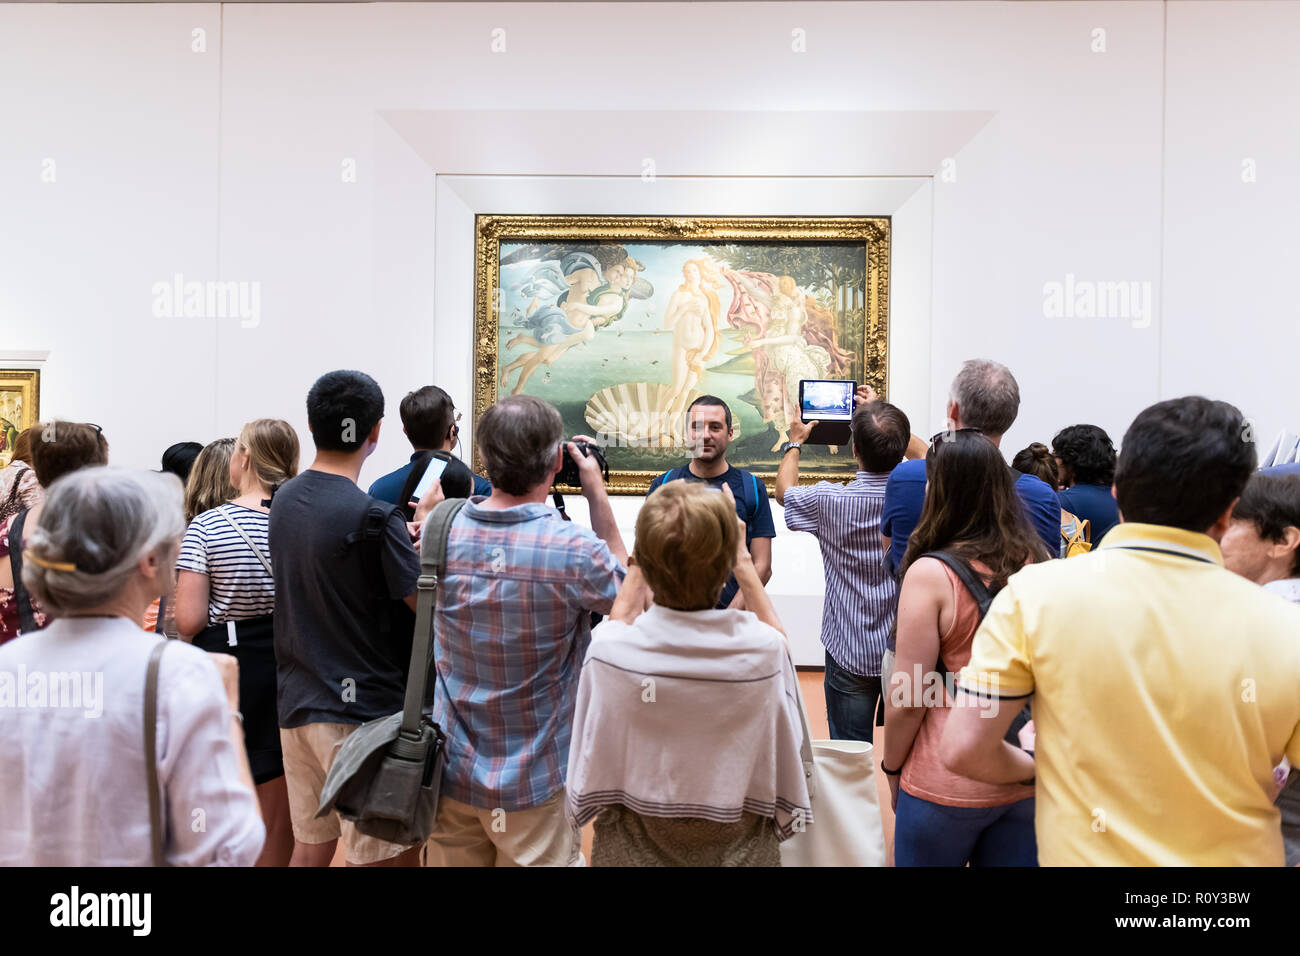 Florence, Italie - 30 août 2018 : Naissance de Vénus célèbre peinture de Sandro Botticelli à Florence Galerie des Offices avec beaucoup de gens, les visiteurs qui prennent pho Banque D'Images